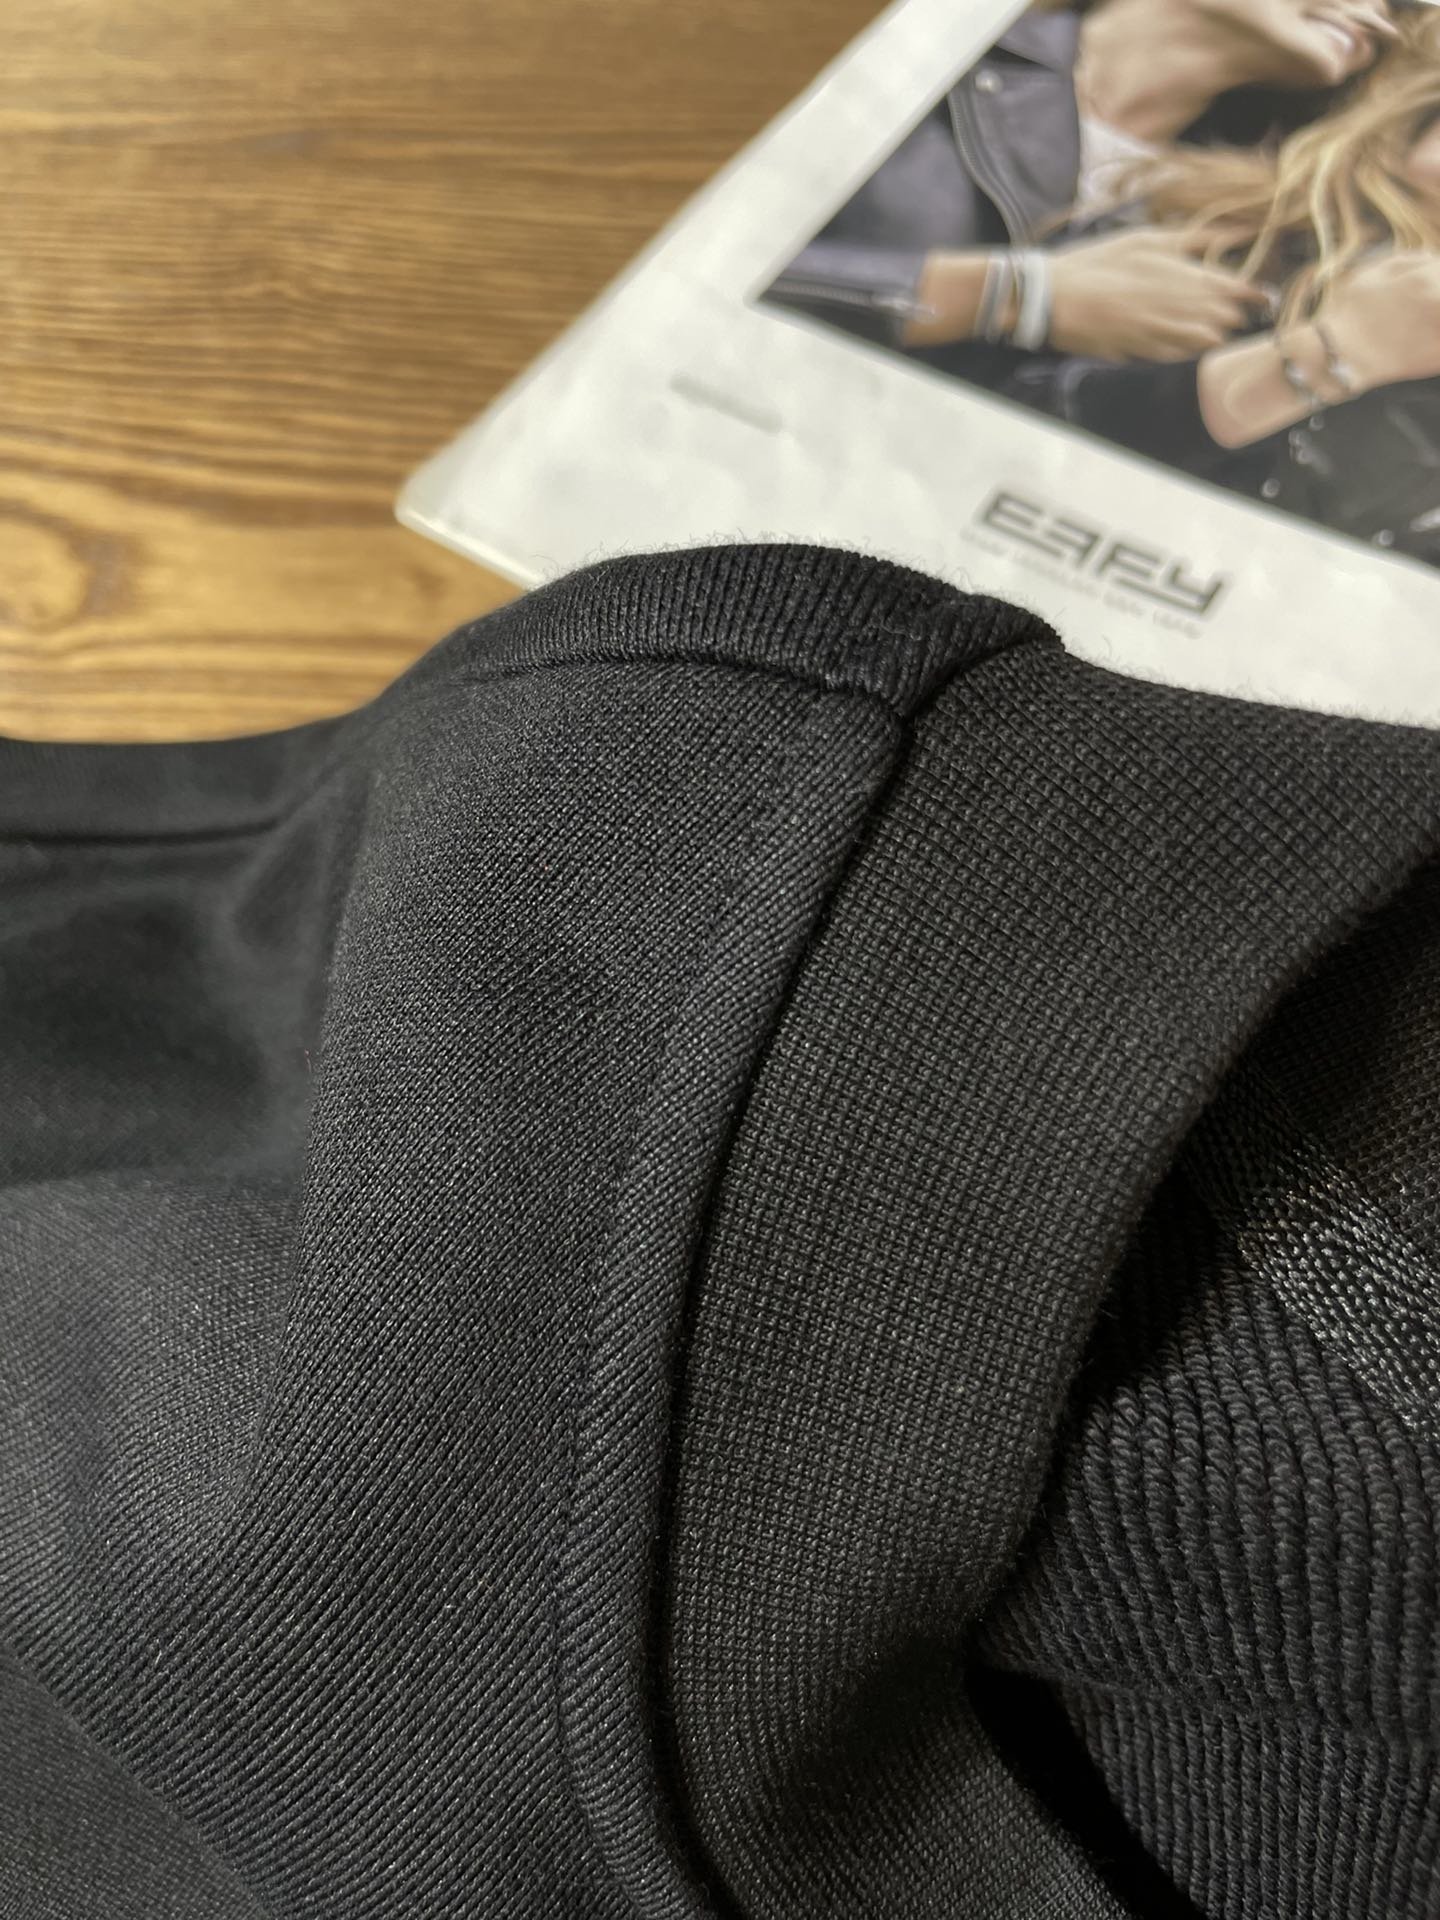 Loewe2023秋冬新品圆领套头套装客供进口顶级定制面料亲肤舒适非常低调又显品味玩味熟男必备款式都是最